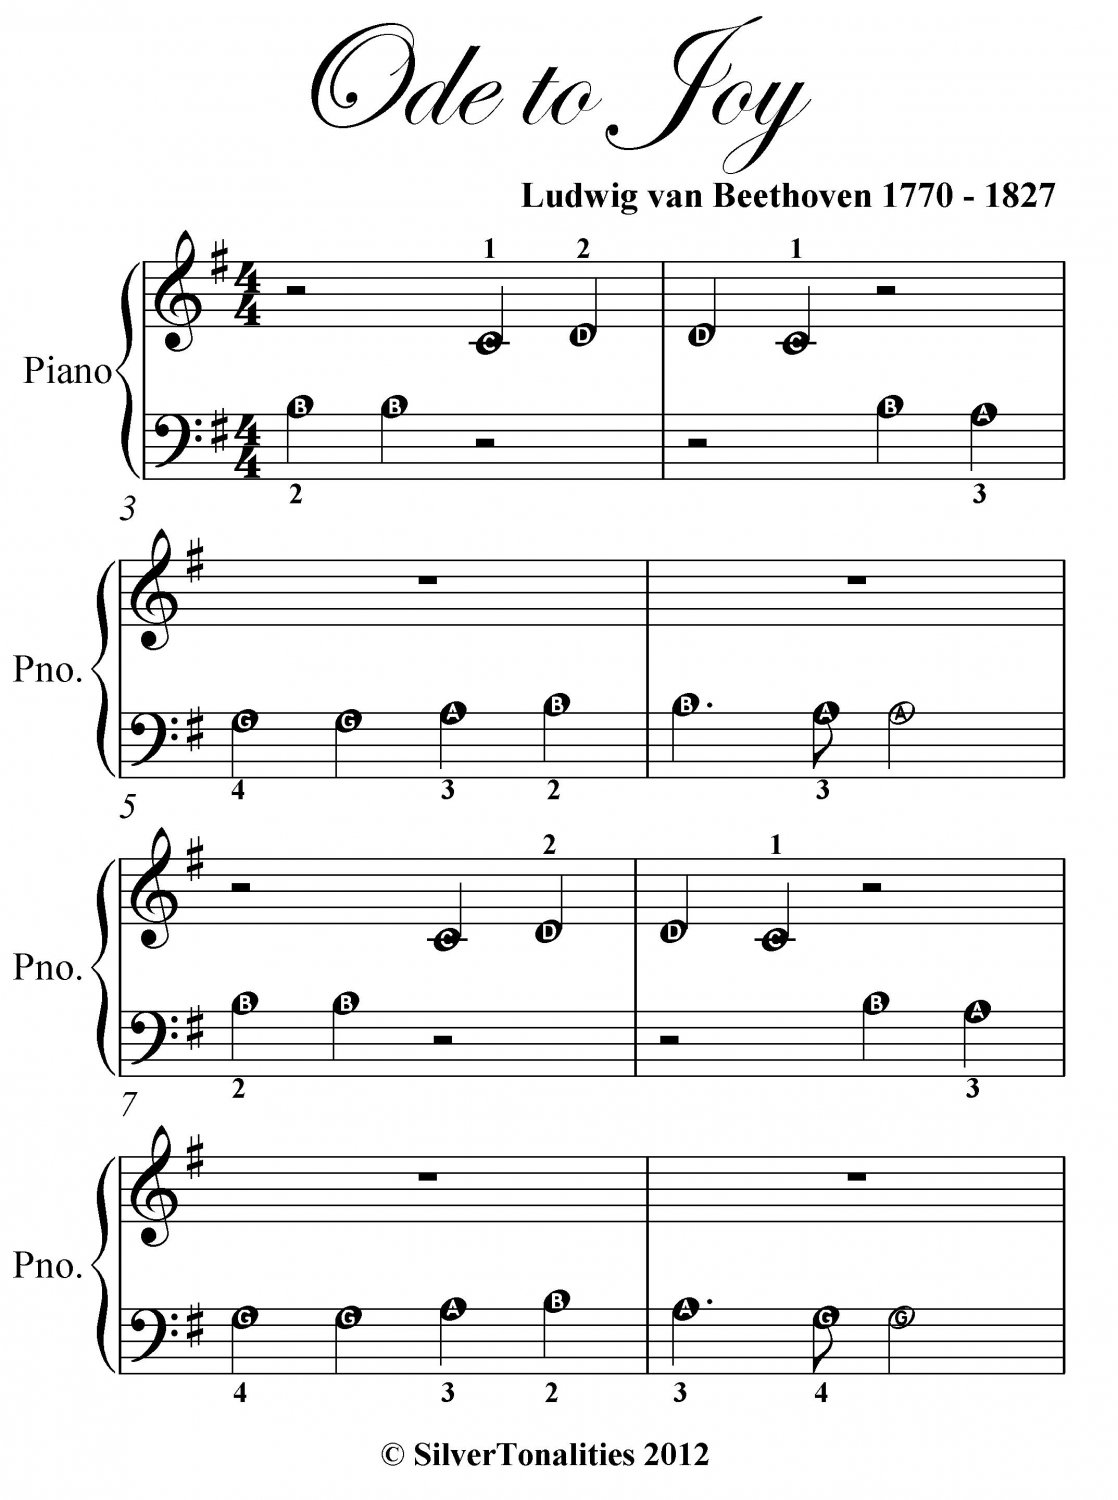 Ode to Joy Beginner Piano Sheet Music PDF